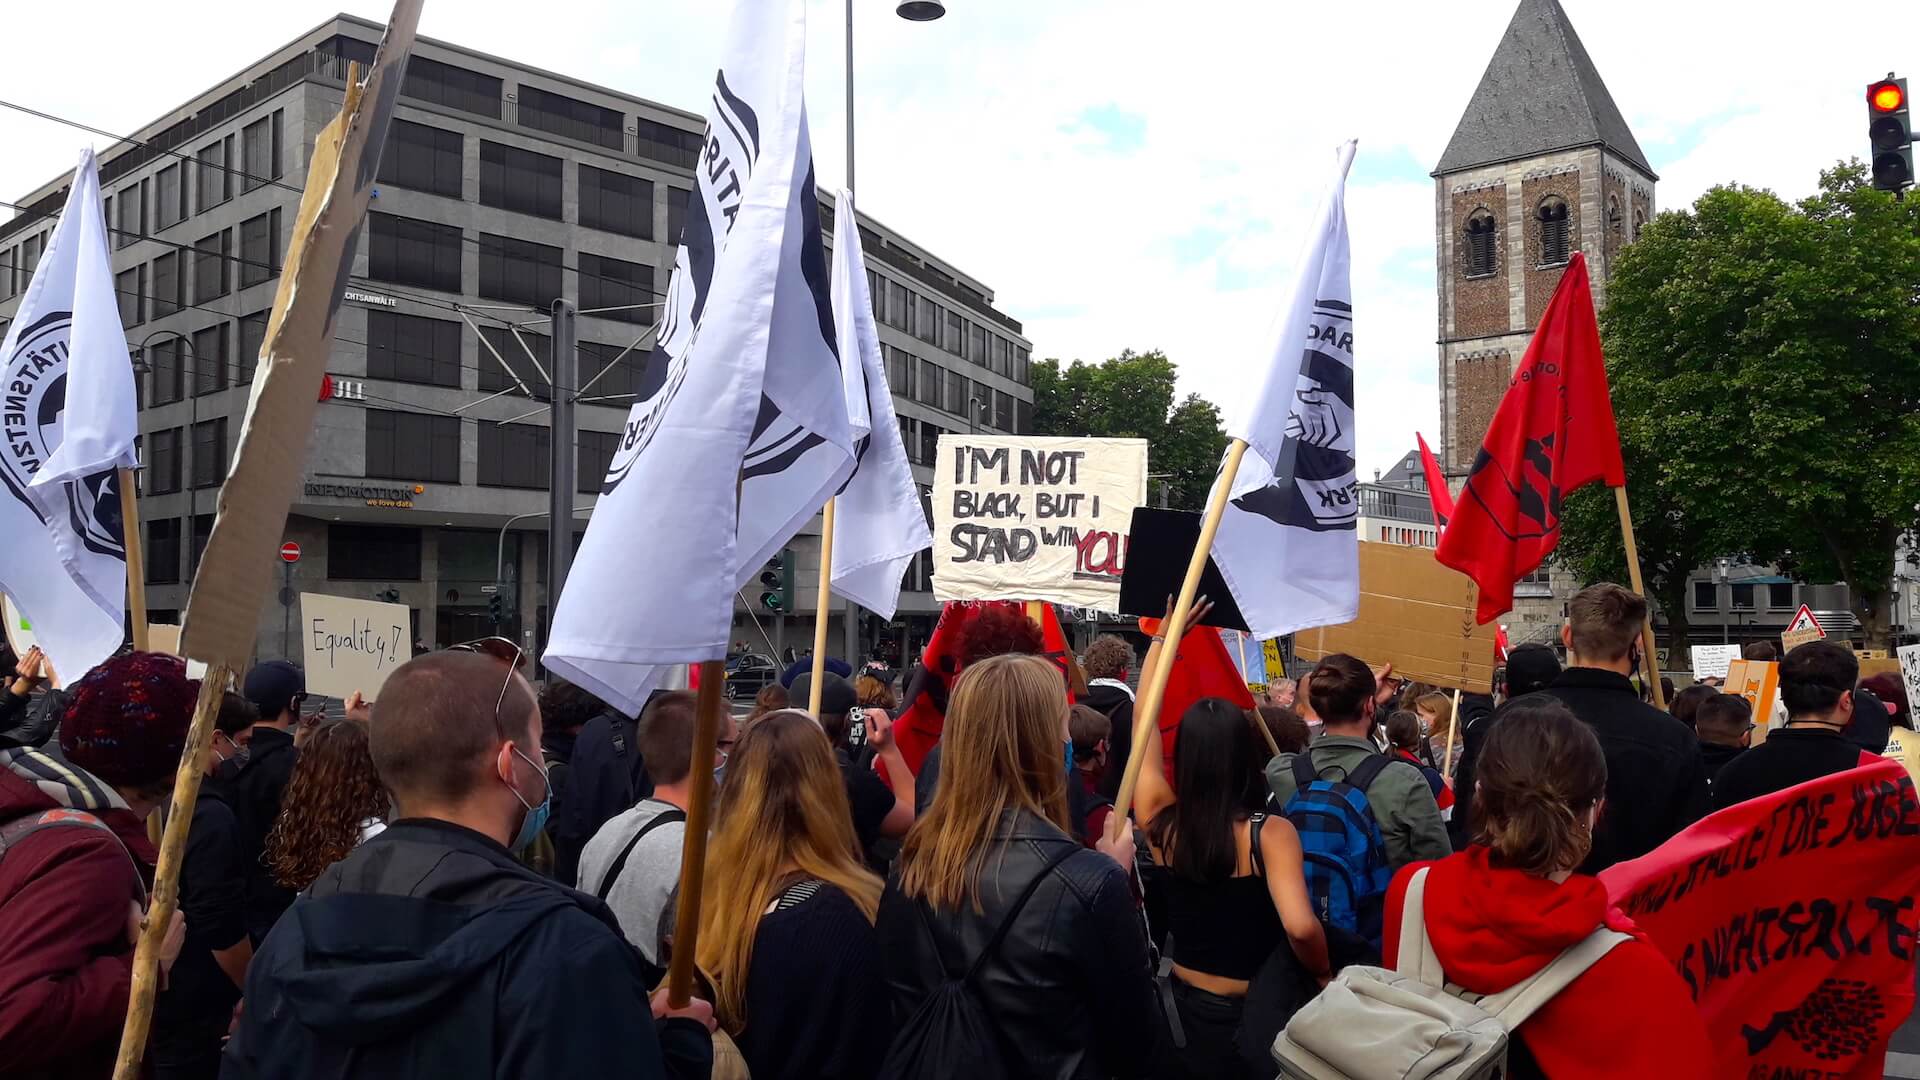 Solidaritätsnetzwerk Deutschland organisiert eine Demo zum Thema „Black lives matter“ - Demonstrierenden halten Plakate und Fahnen hoch